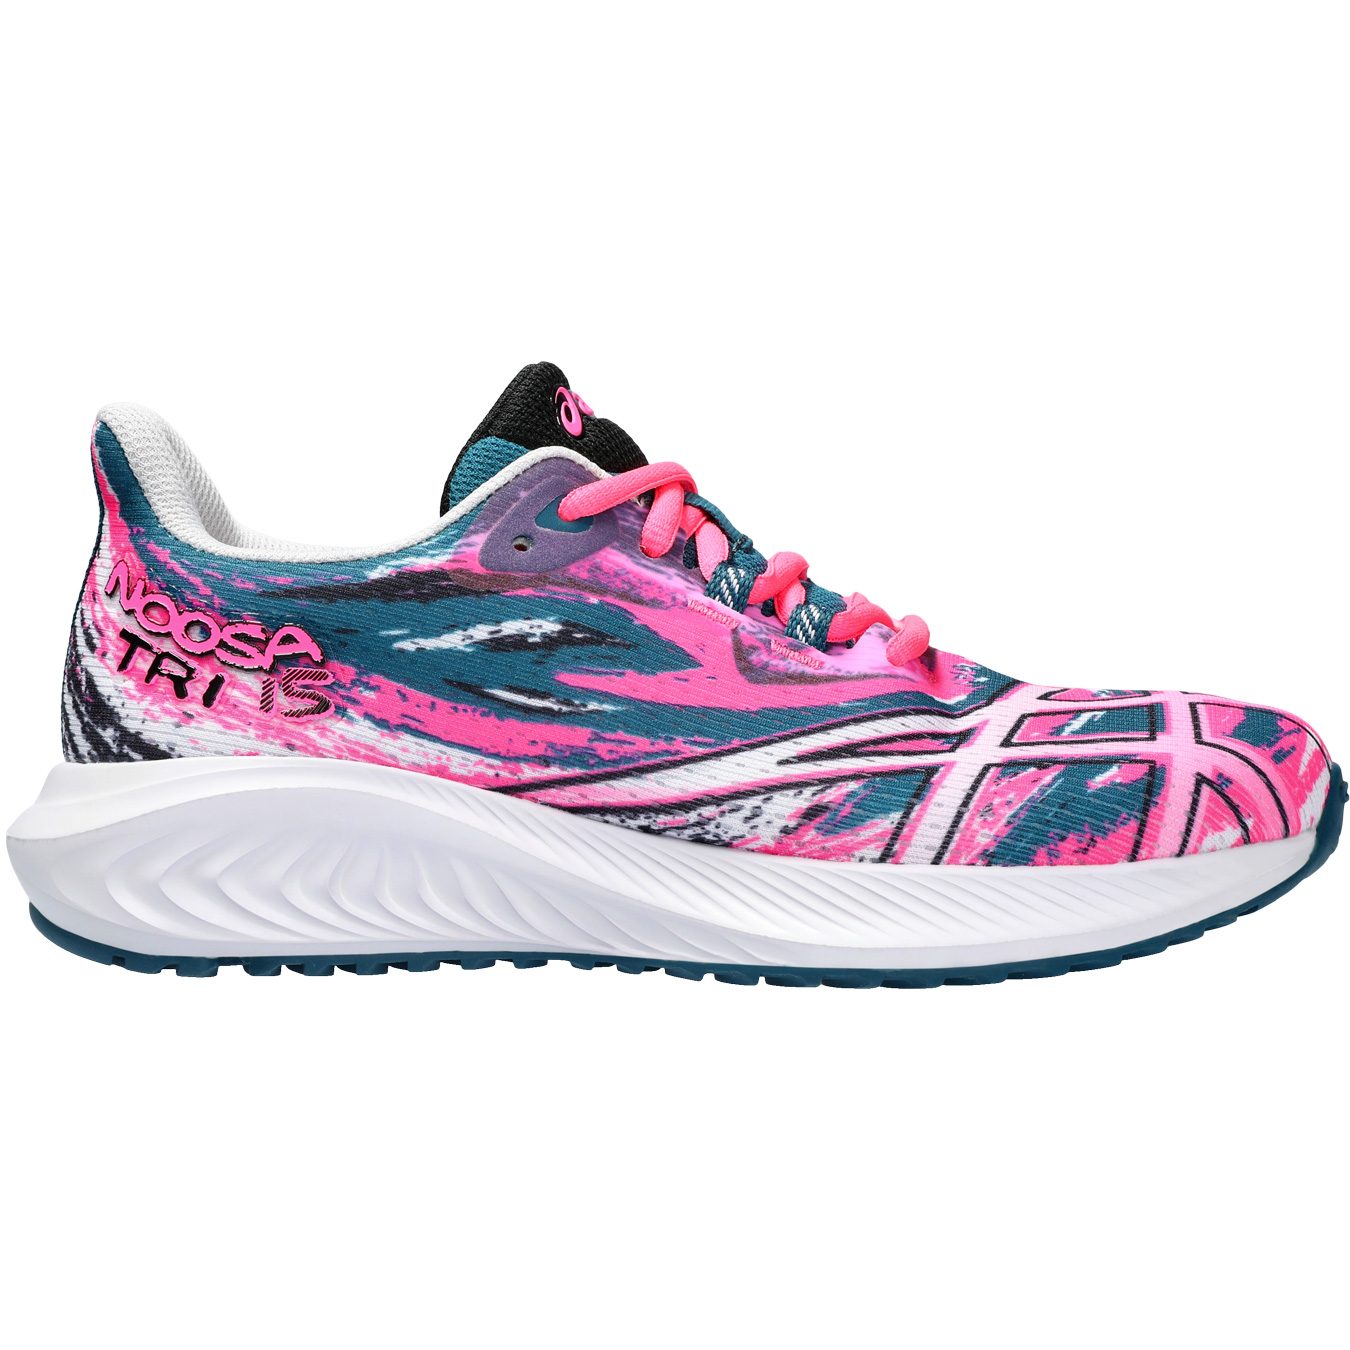 ASICS - Gel-Noosa TRI 15 GS Running Shoes Kids hot pink at Sport Bittl Shop